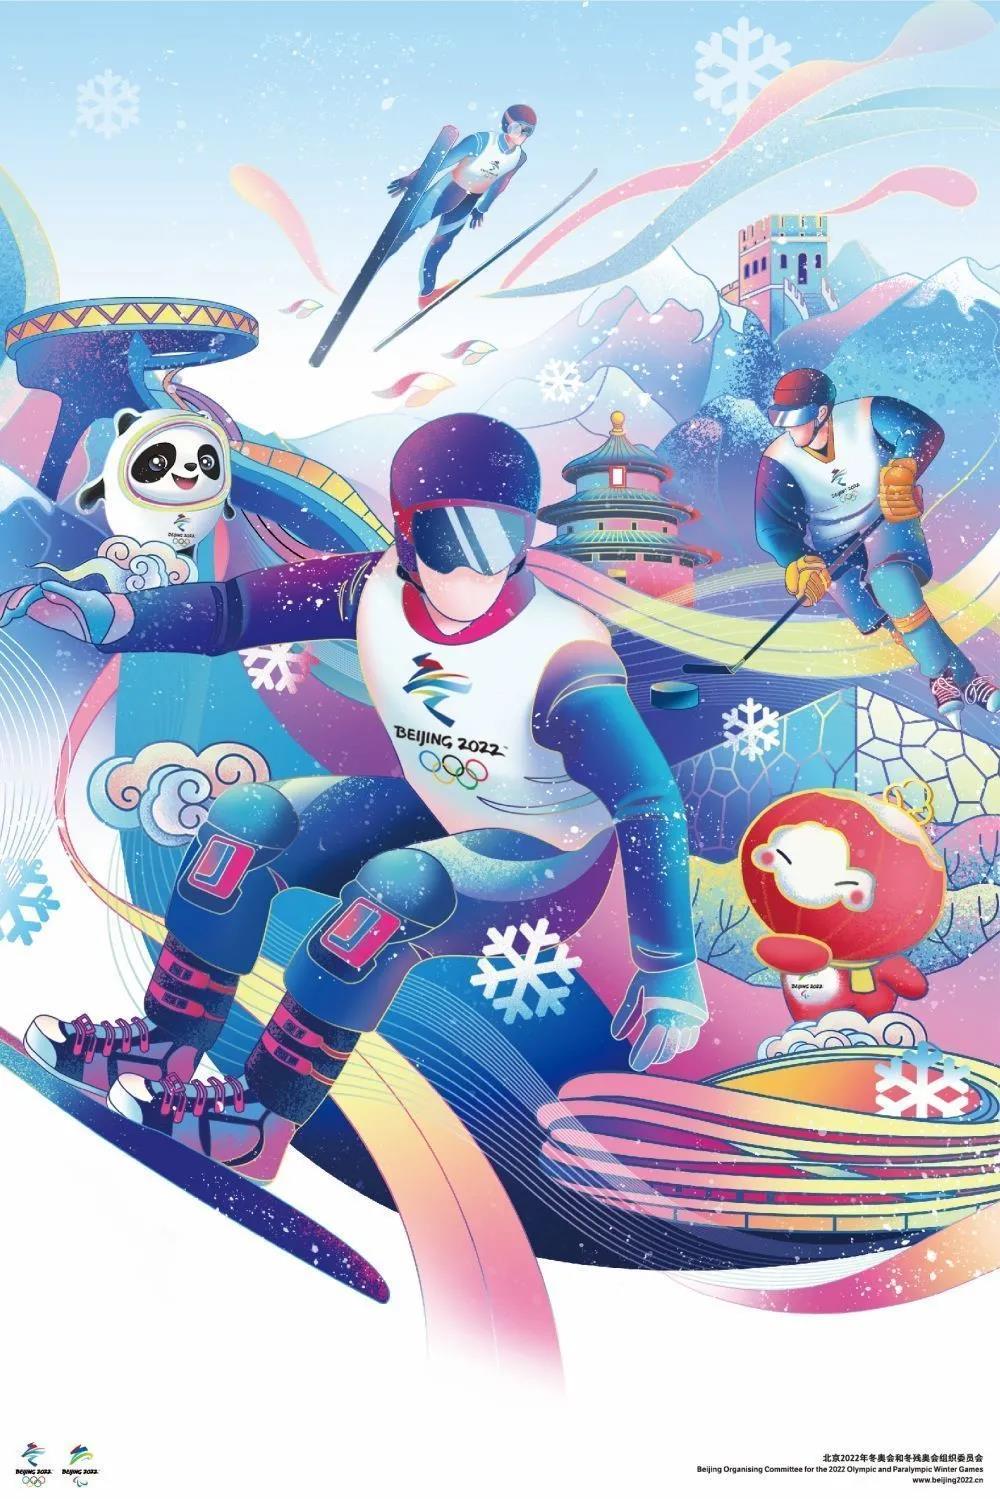 北京2022年冬奥会和冬残奥会海报发布